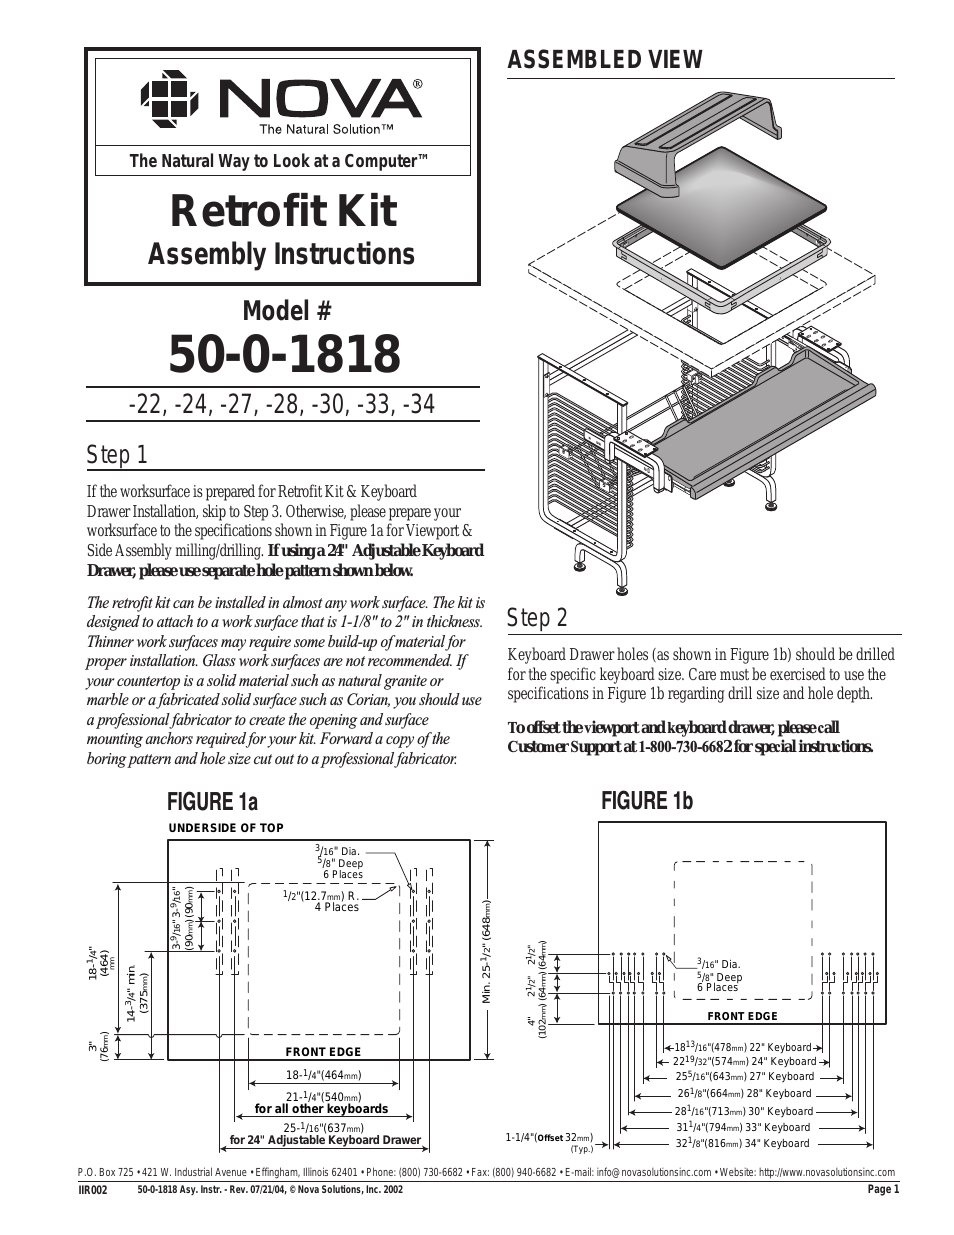 Retrofit Kit 50-0-1818